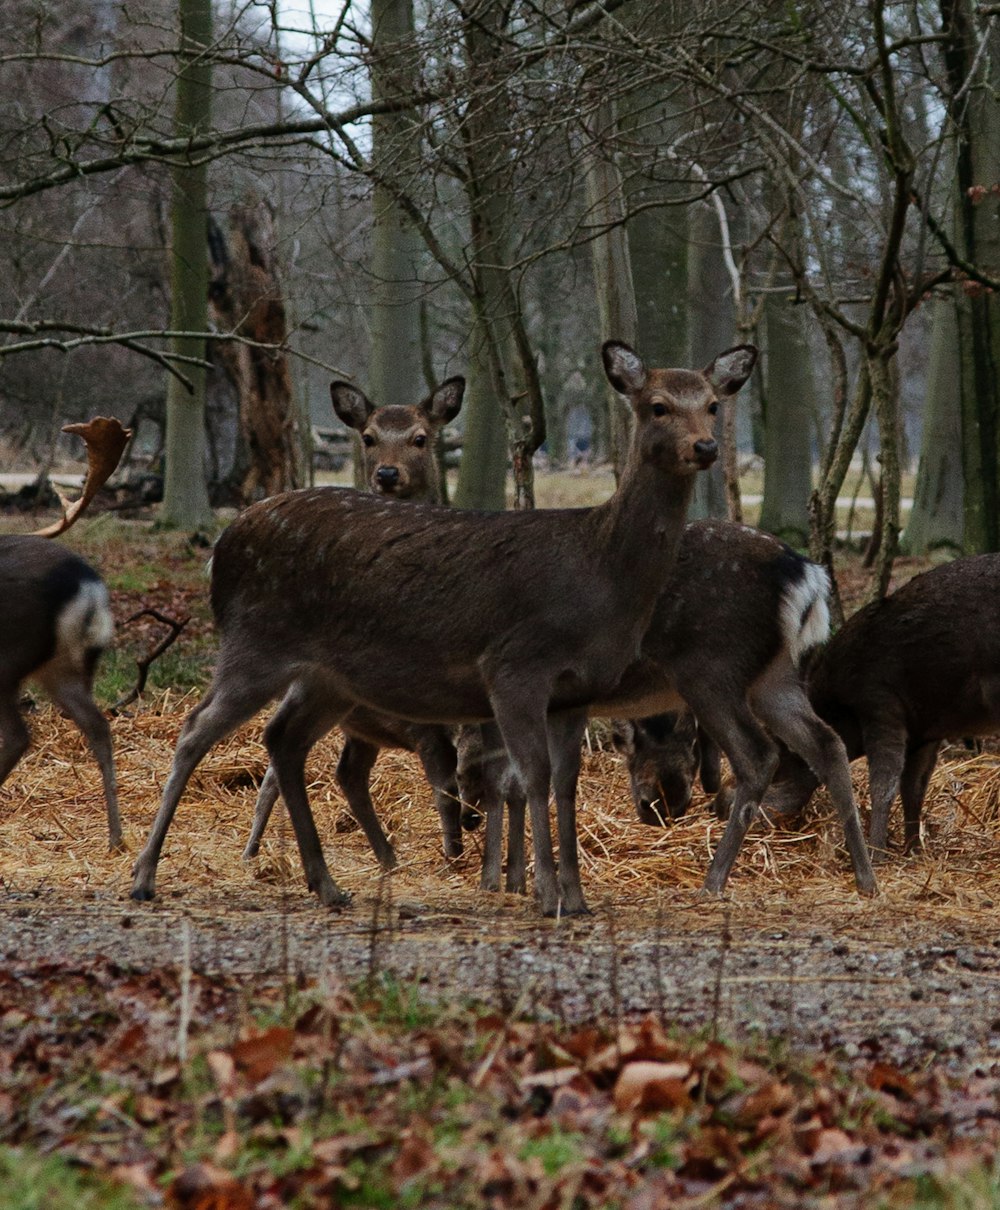 a herd of deer walking through a forest